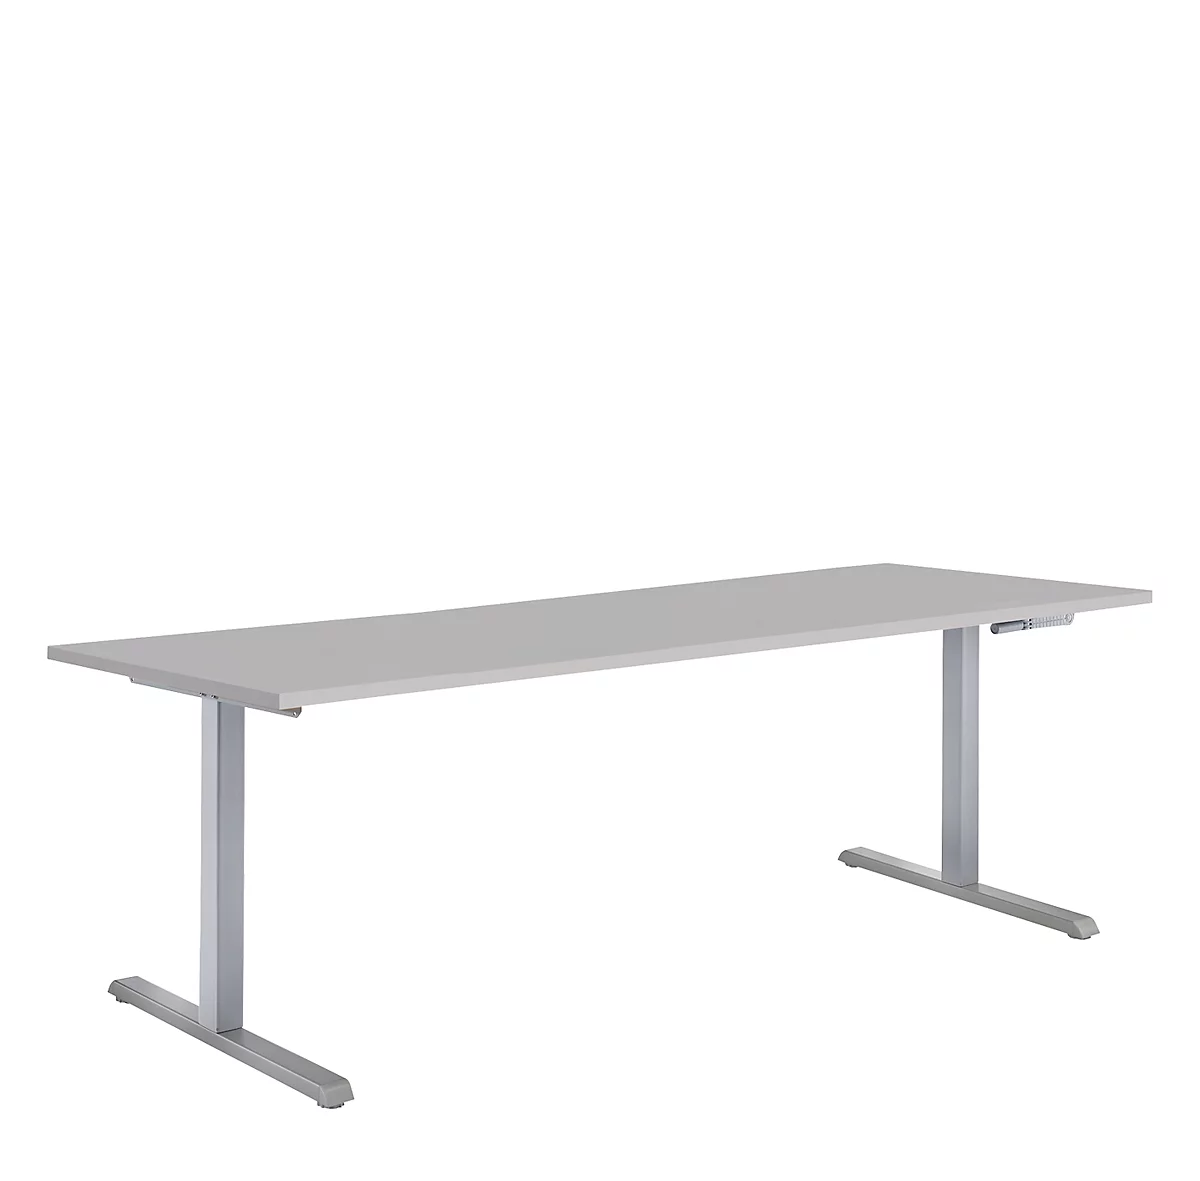 Puesto para trabajo sentado/de pie, mesa de manivela Multiflex, ajustable en altura, An 1600 mm, gris lum./alu. bl.